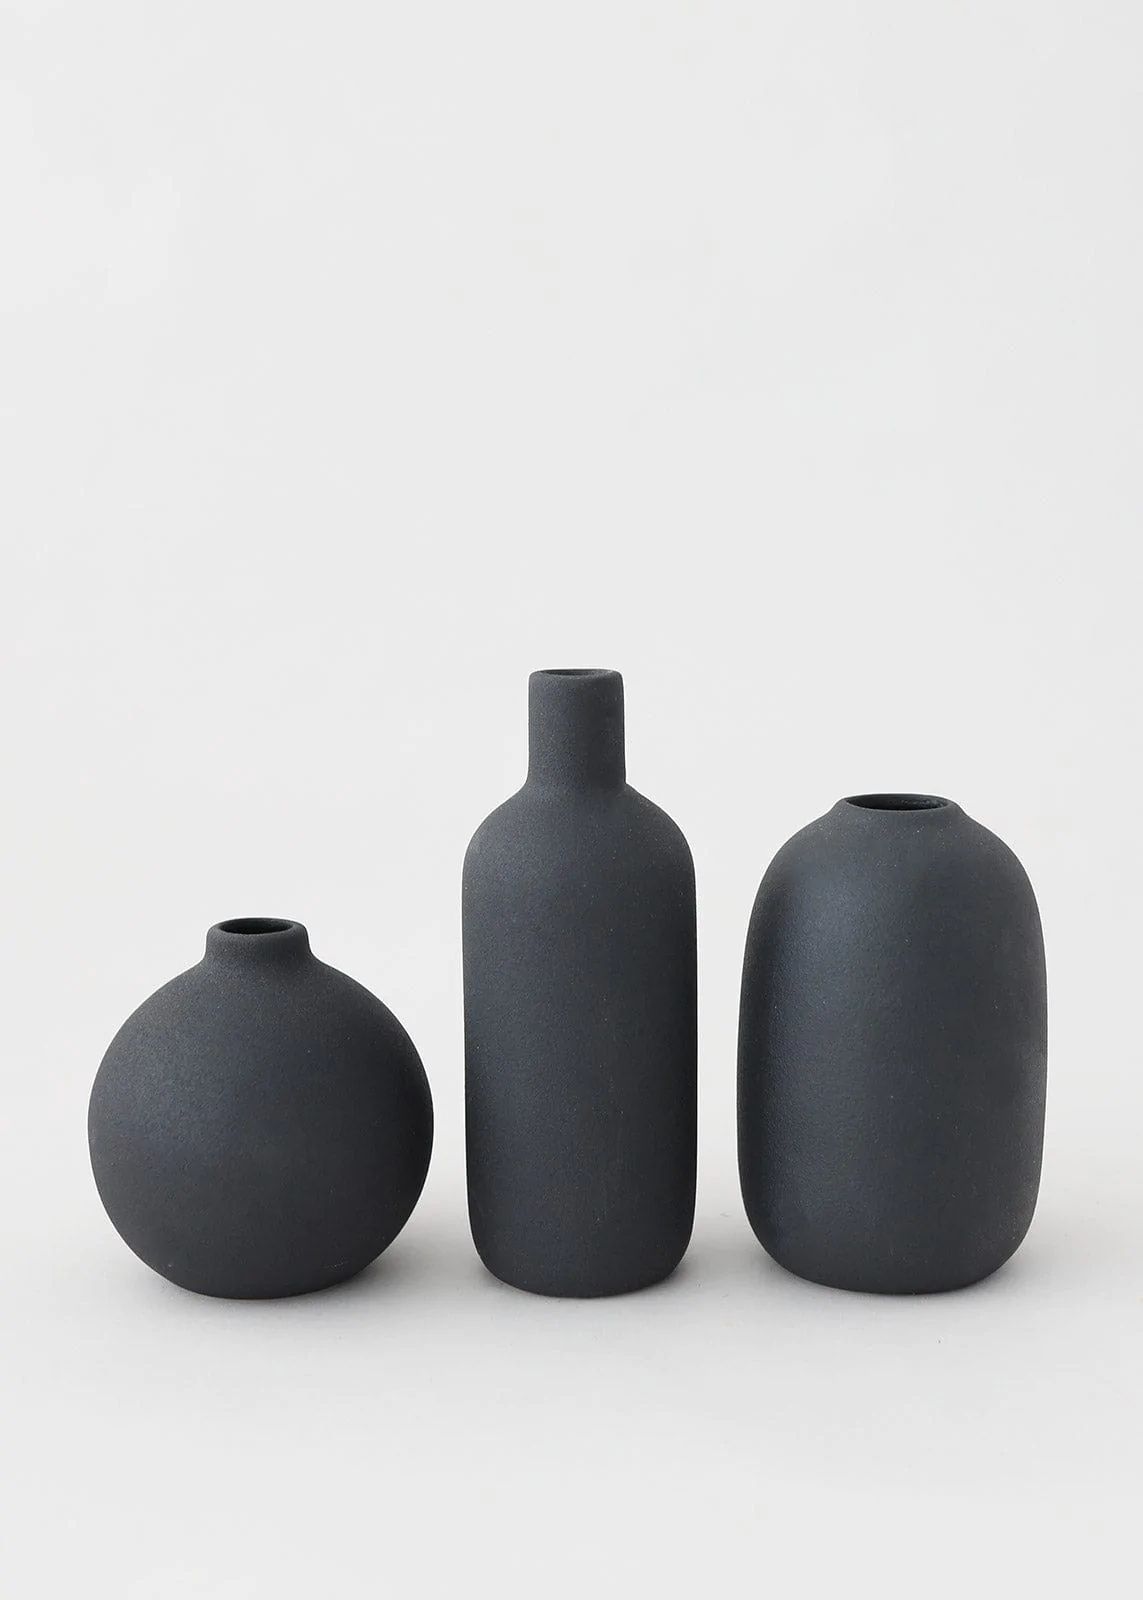 Black Ceramic Bud Vases | Vase Sets for Home Styling | Afloral.com | Afloral